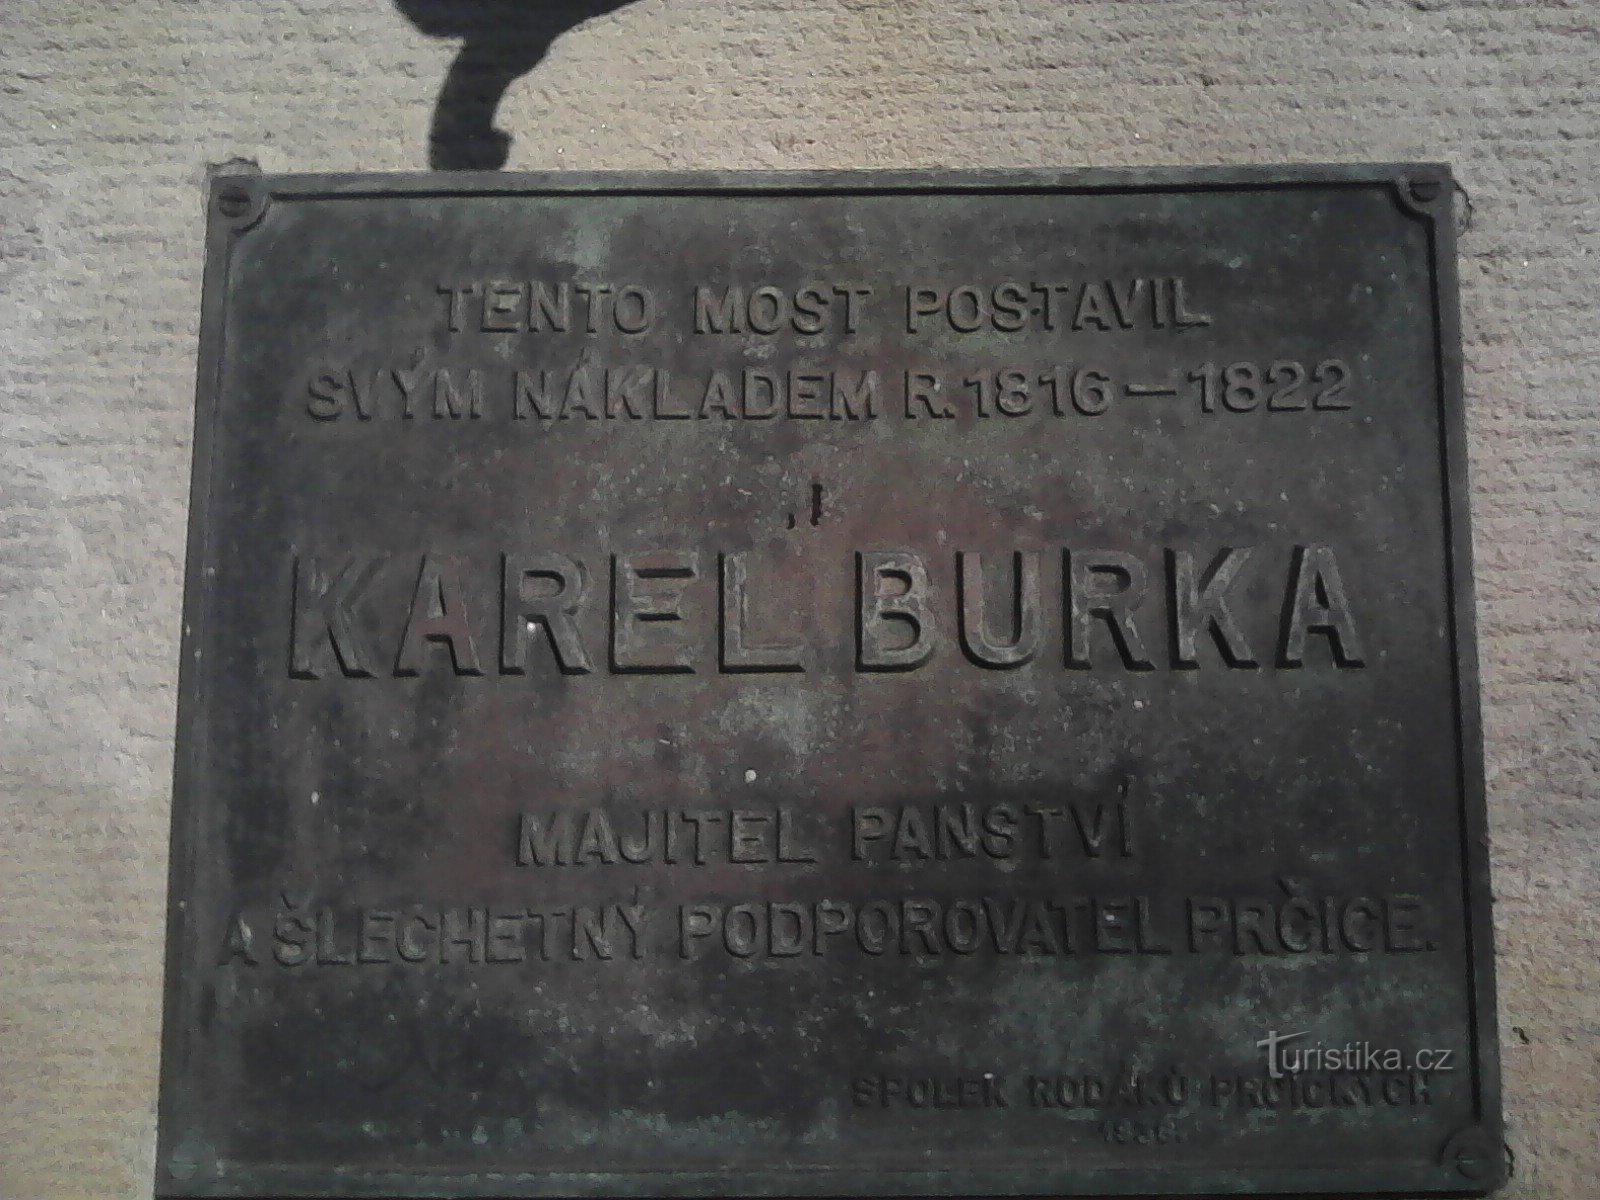 1. Placa conmemorativa en el puente Prčice de Karel Burka.